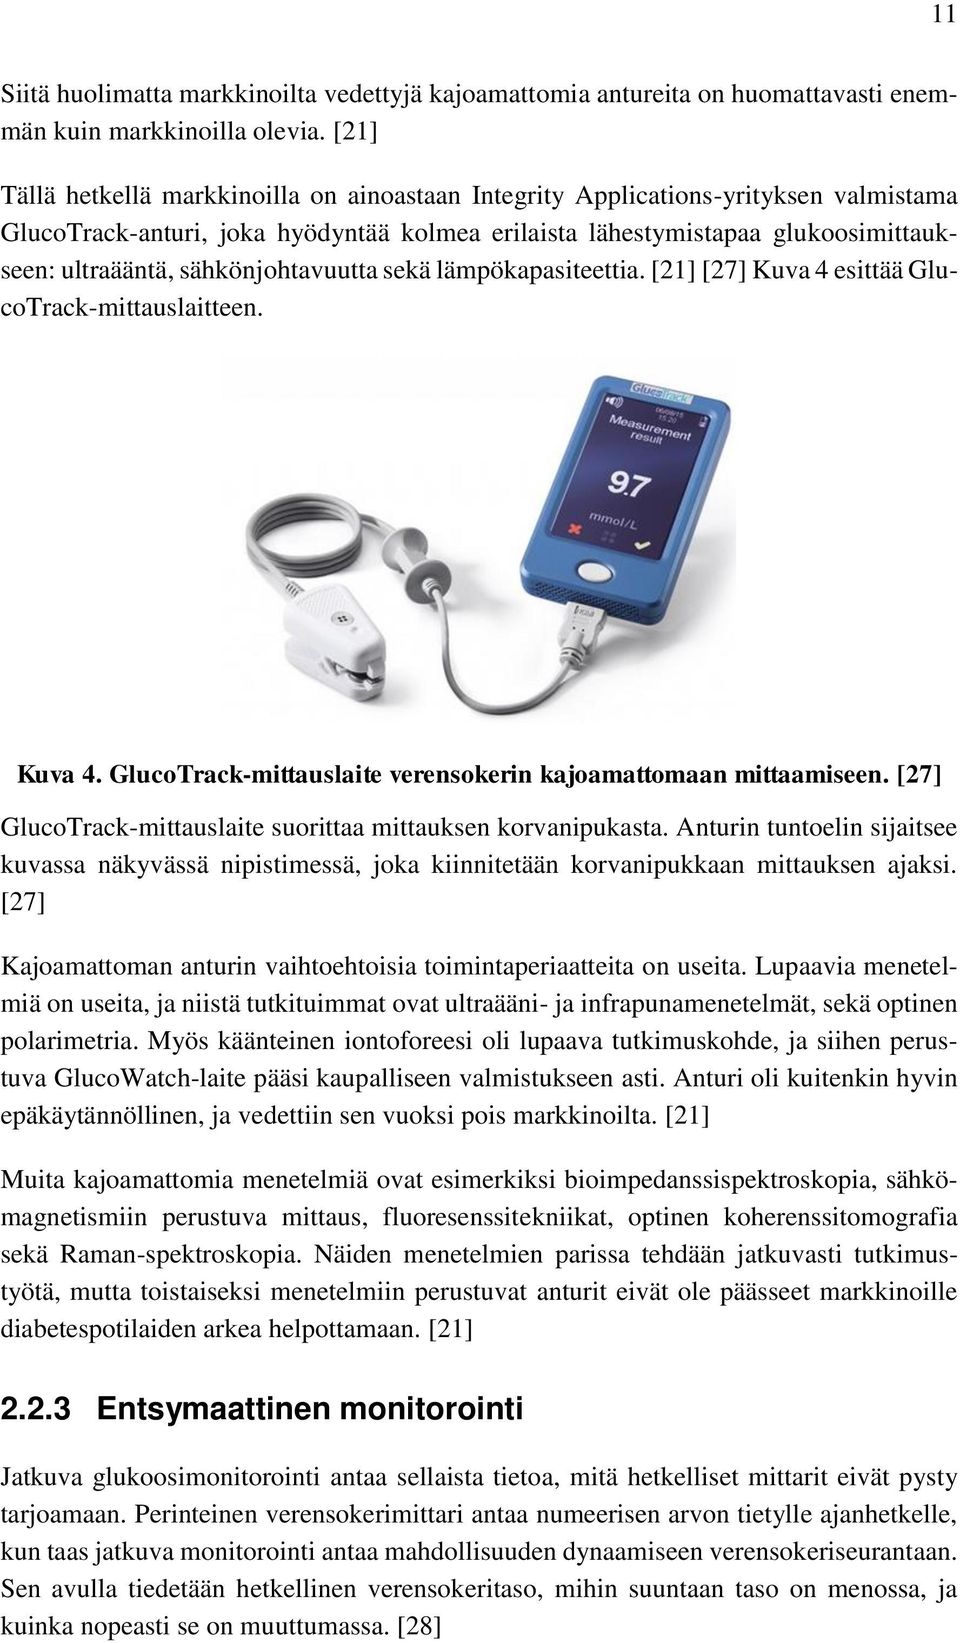 sähkönjohtavuutta sekä lämpökapasiteettia. [21] [27] Kuva 4 esittää GlucoTrack-mittauslaitteen. Kuva 4. GlucoTrack-mittauslaite verensokerin kajoamattomaan mittaamiseen.